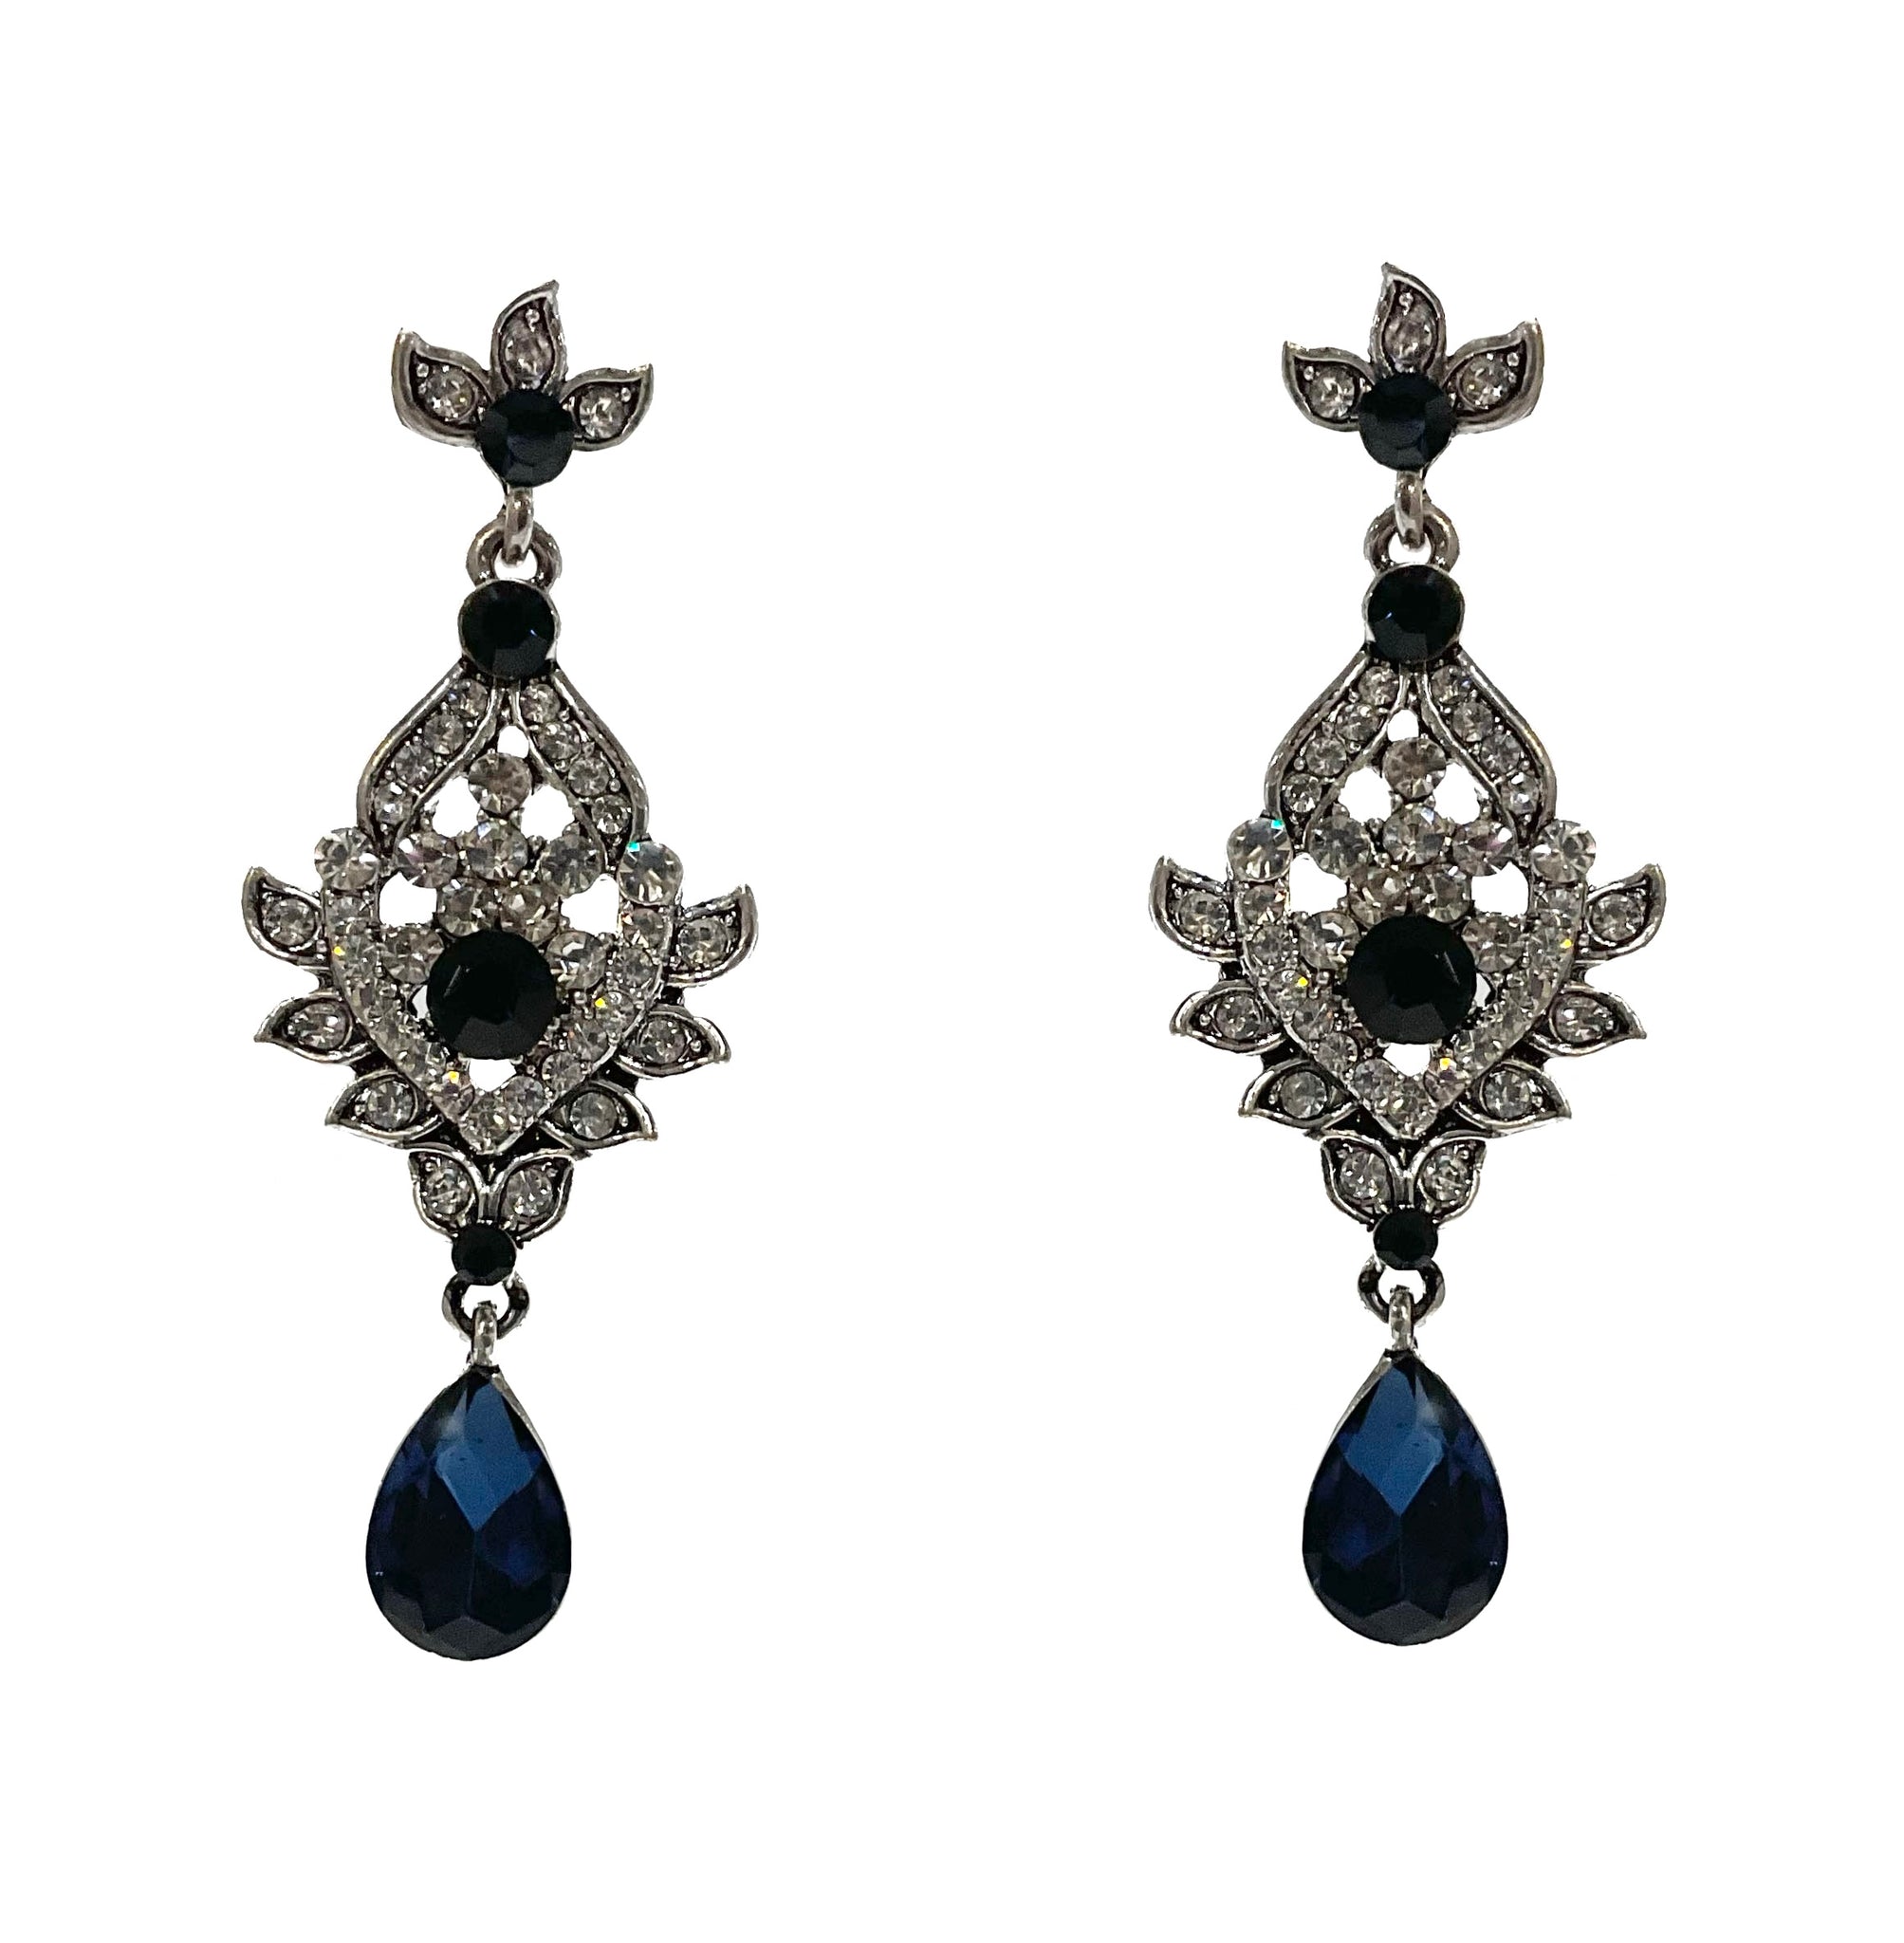 Crystal Fancy Earrings #12-23634BL